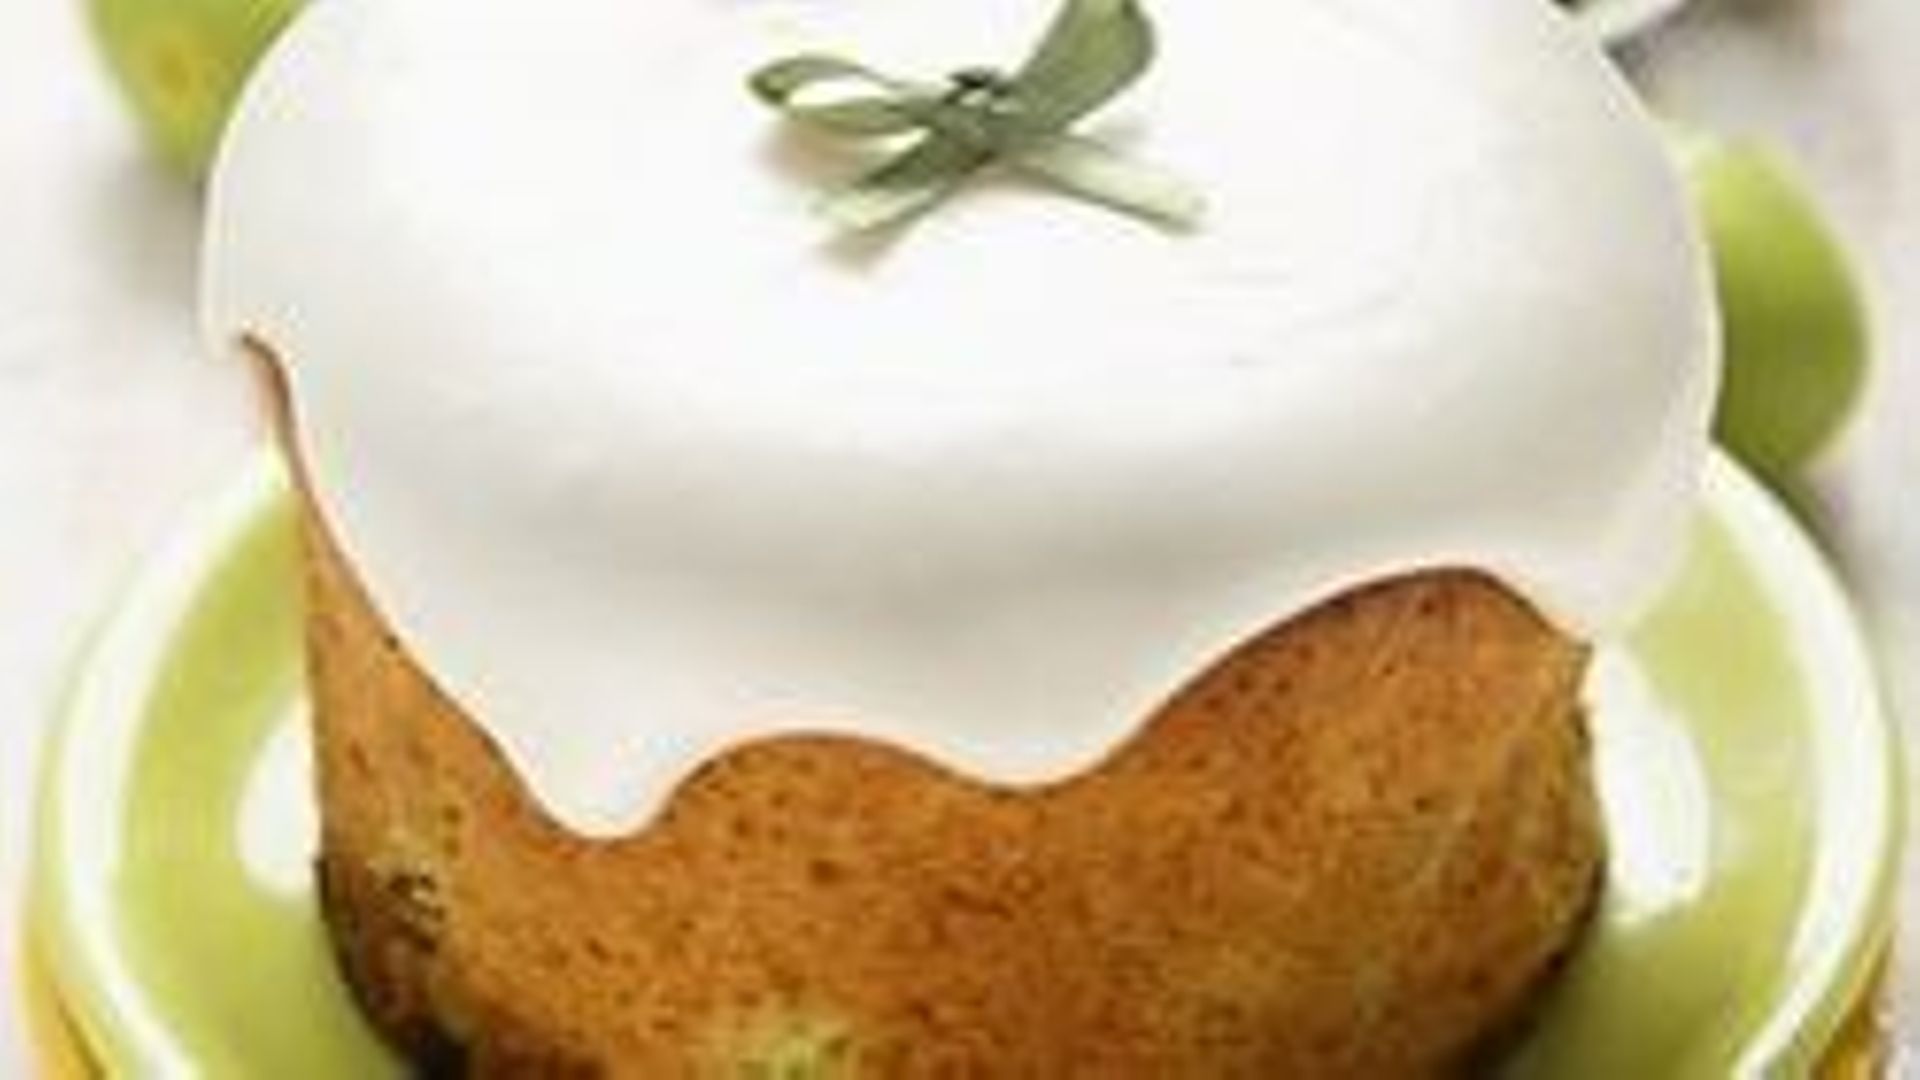 Le truc de Candice : Les glaçages inratables pour petits gâteaux gourmands